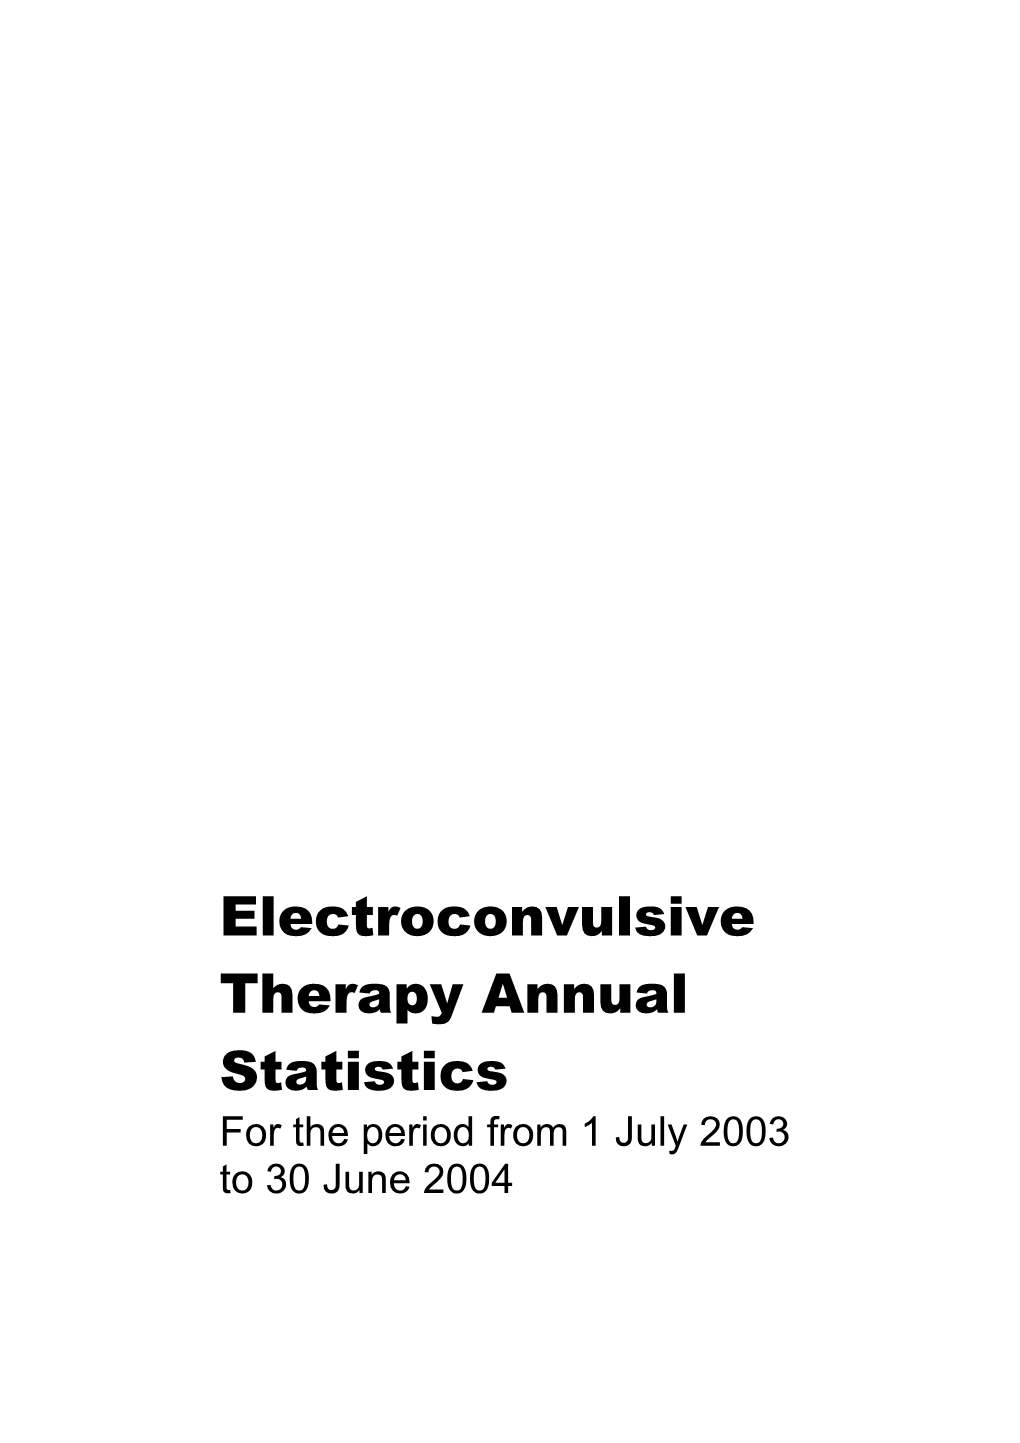 Electroconvulsive Therapy Annual Statistics